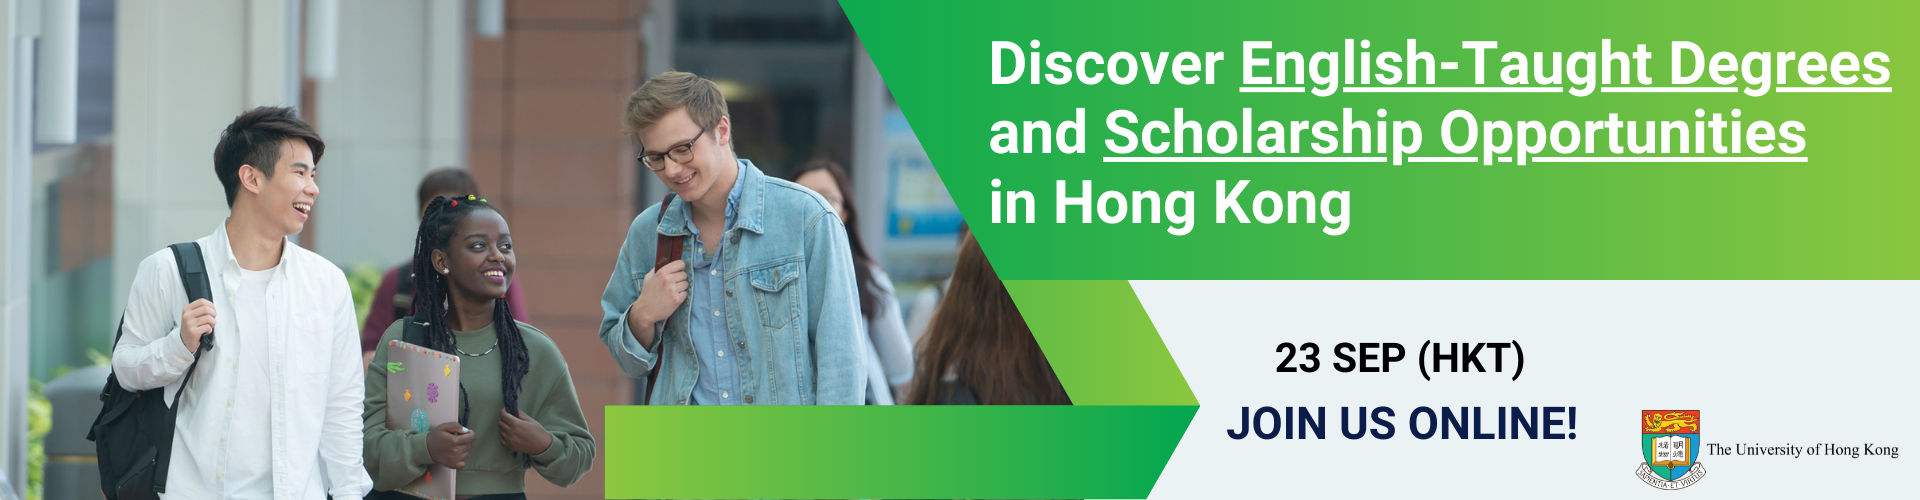 动画文本"Discover English-Taught Degrees and Scholarship Opportunities in Hong Kong 22 Sep Join us online" with photos of students walking on campus